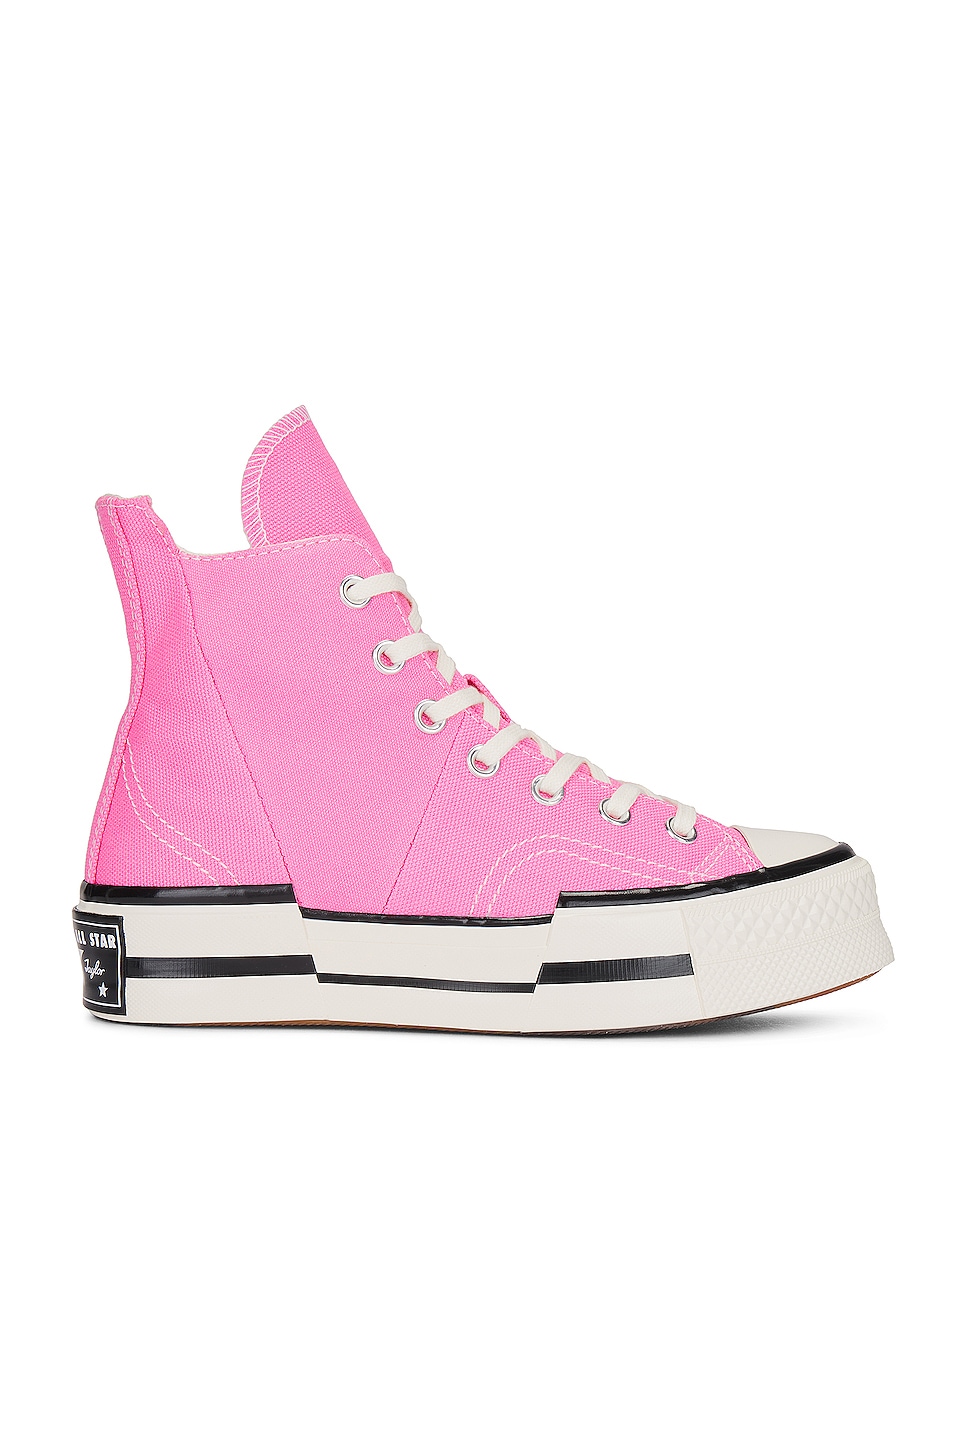 Converse Chuck 70 Plus Sneaker in Oops! Pink | FWRD